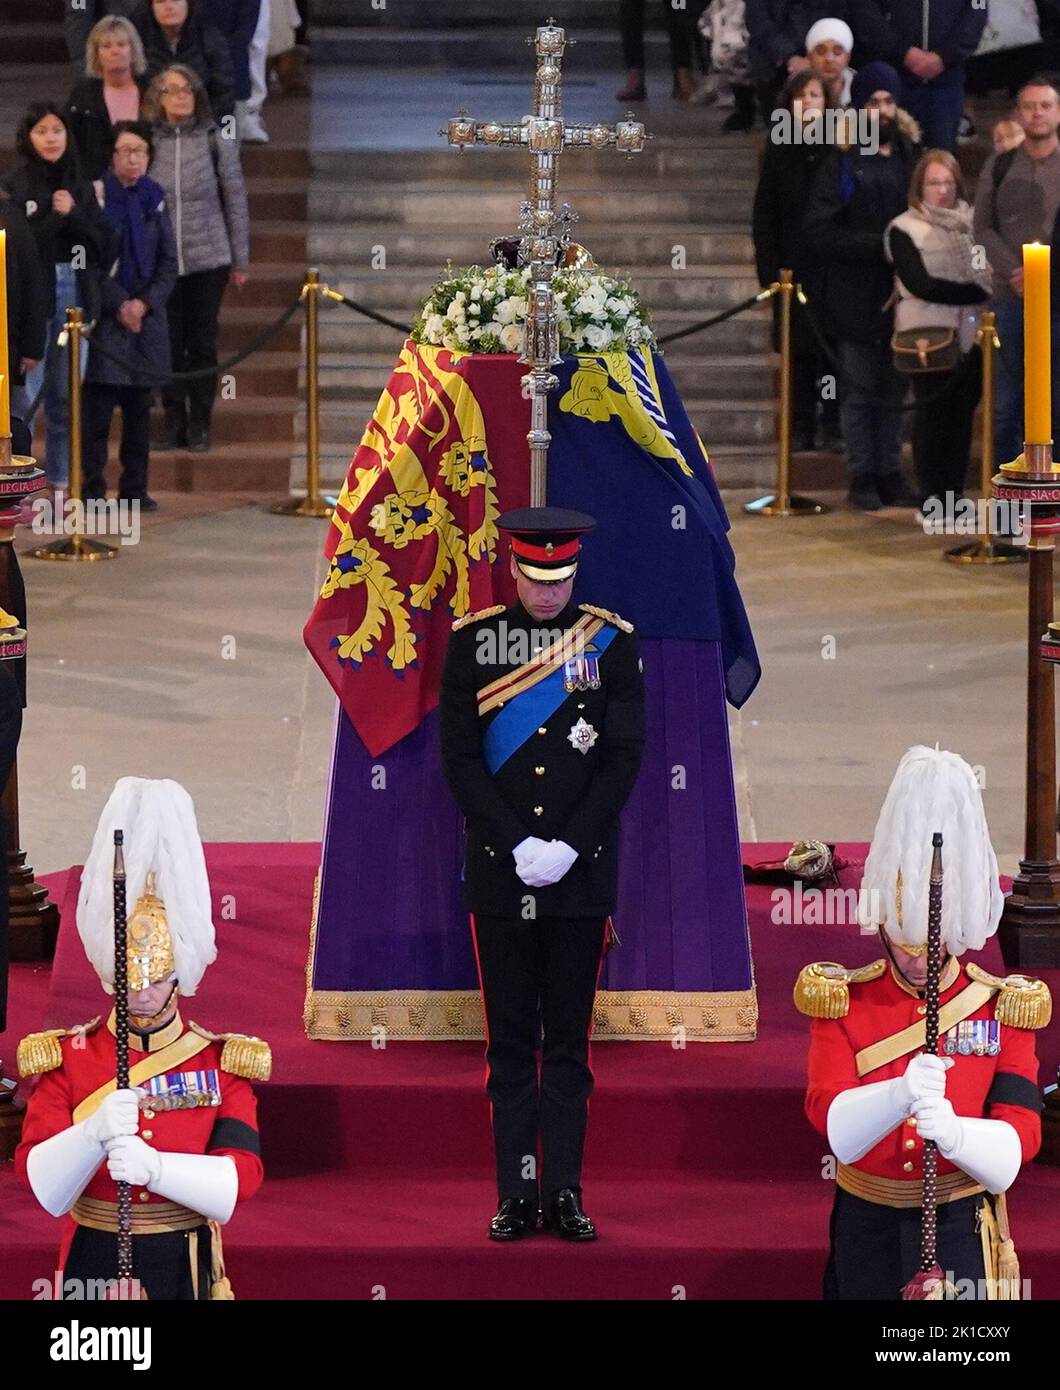 Il Principe di Galles si trova accanto alla bara di sua nonna, la Regina Elisabetta II, in quanto si trova in stato sulla catalana nella Westminster Hall, presso il Palazzo di Westminster, Londra. Data immagine: Sabato 17 settembre 2022. Foto Stock